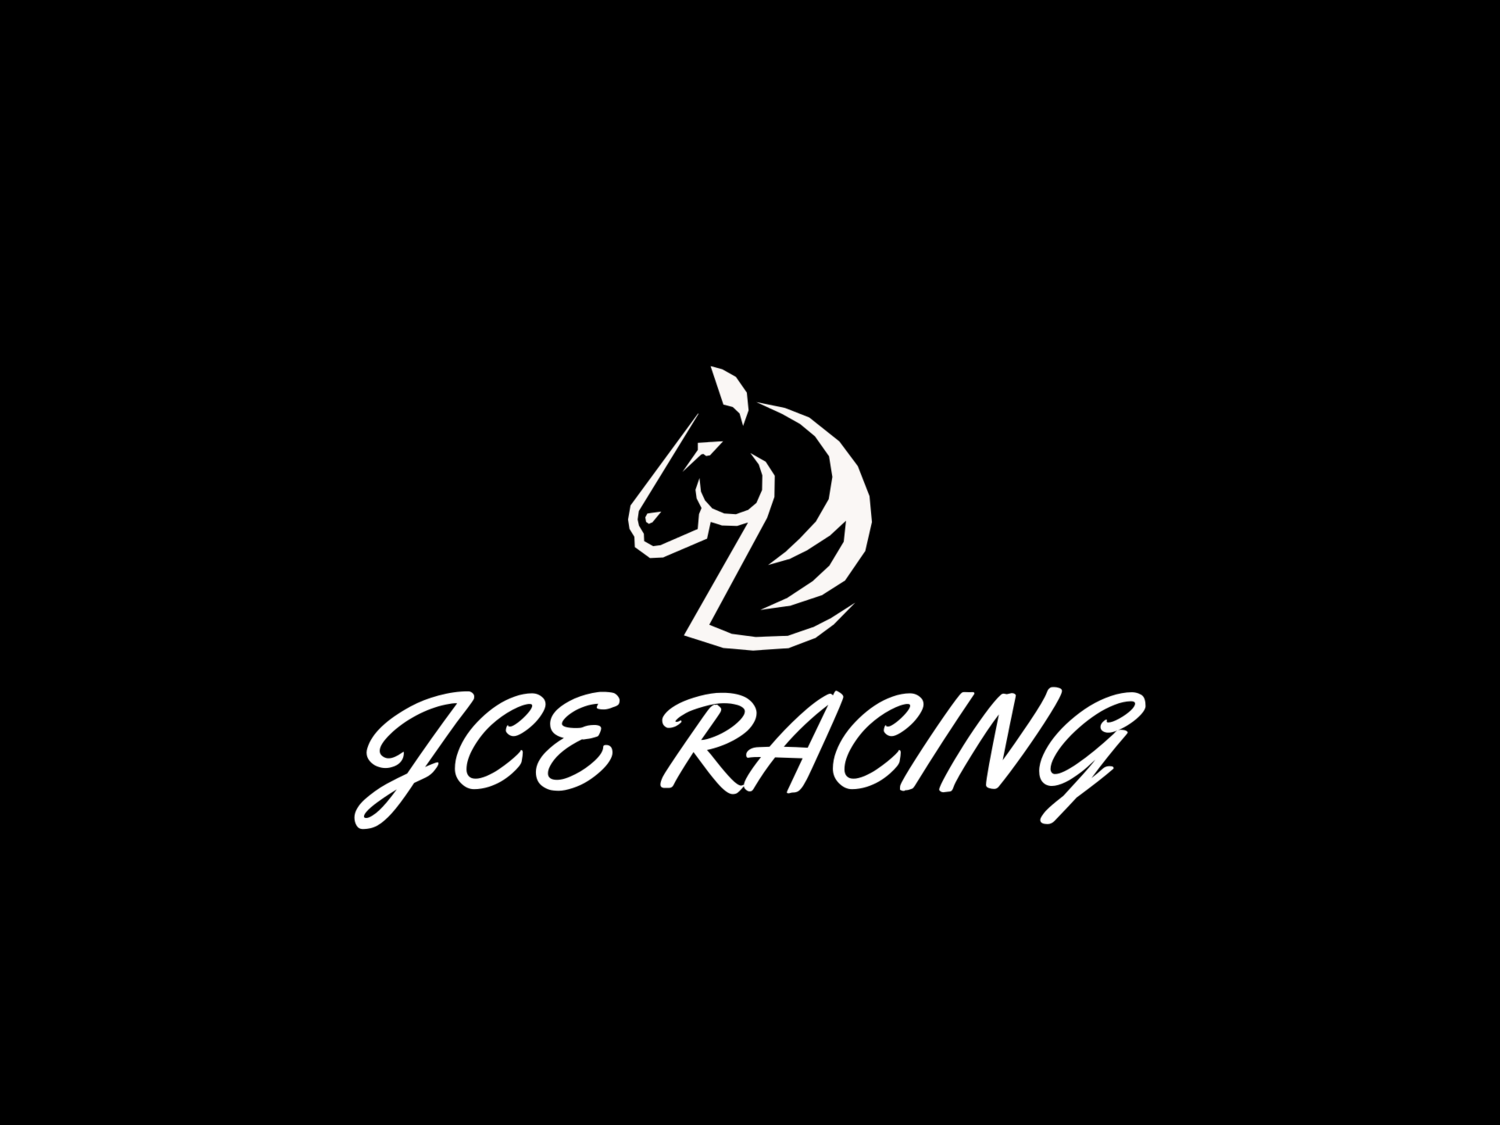 JCE Racing Stable